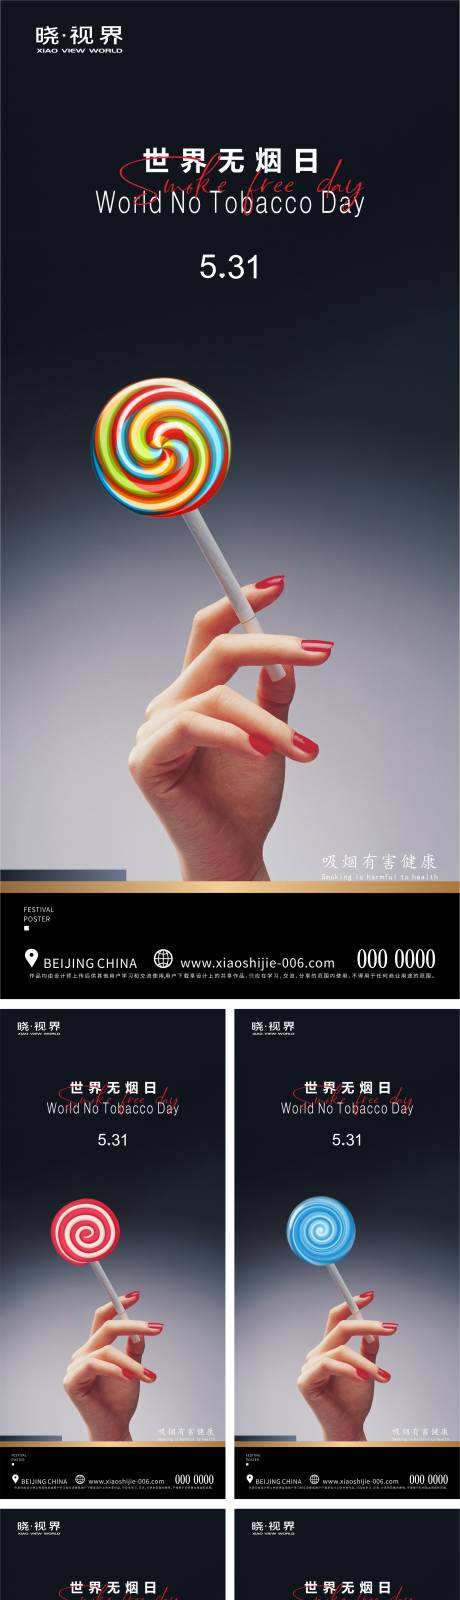 世界卫生日世界无烟日系列海报